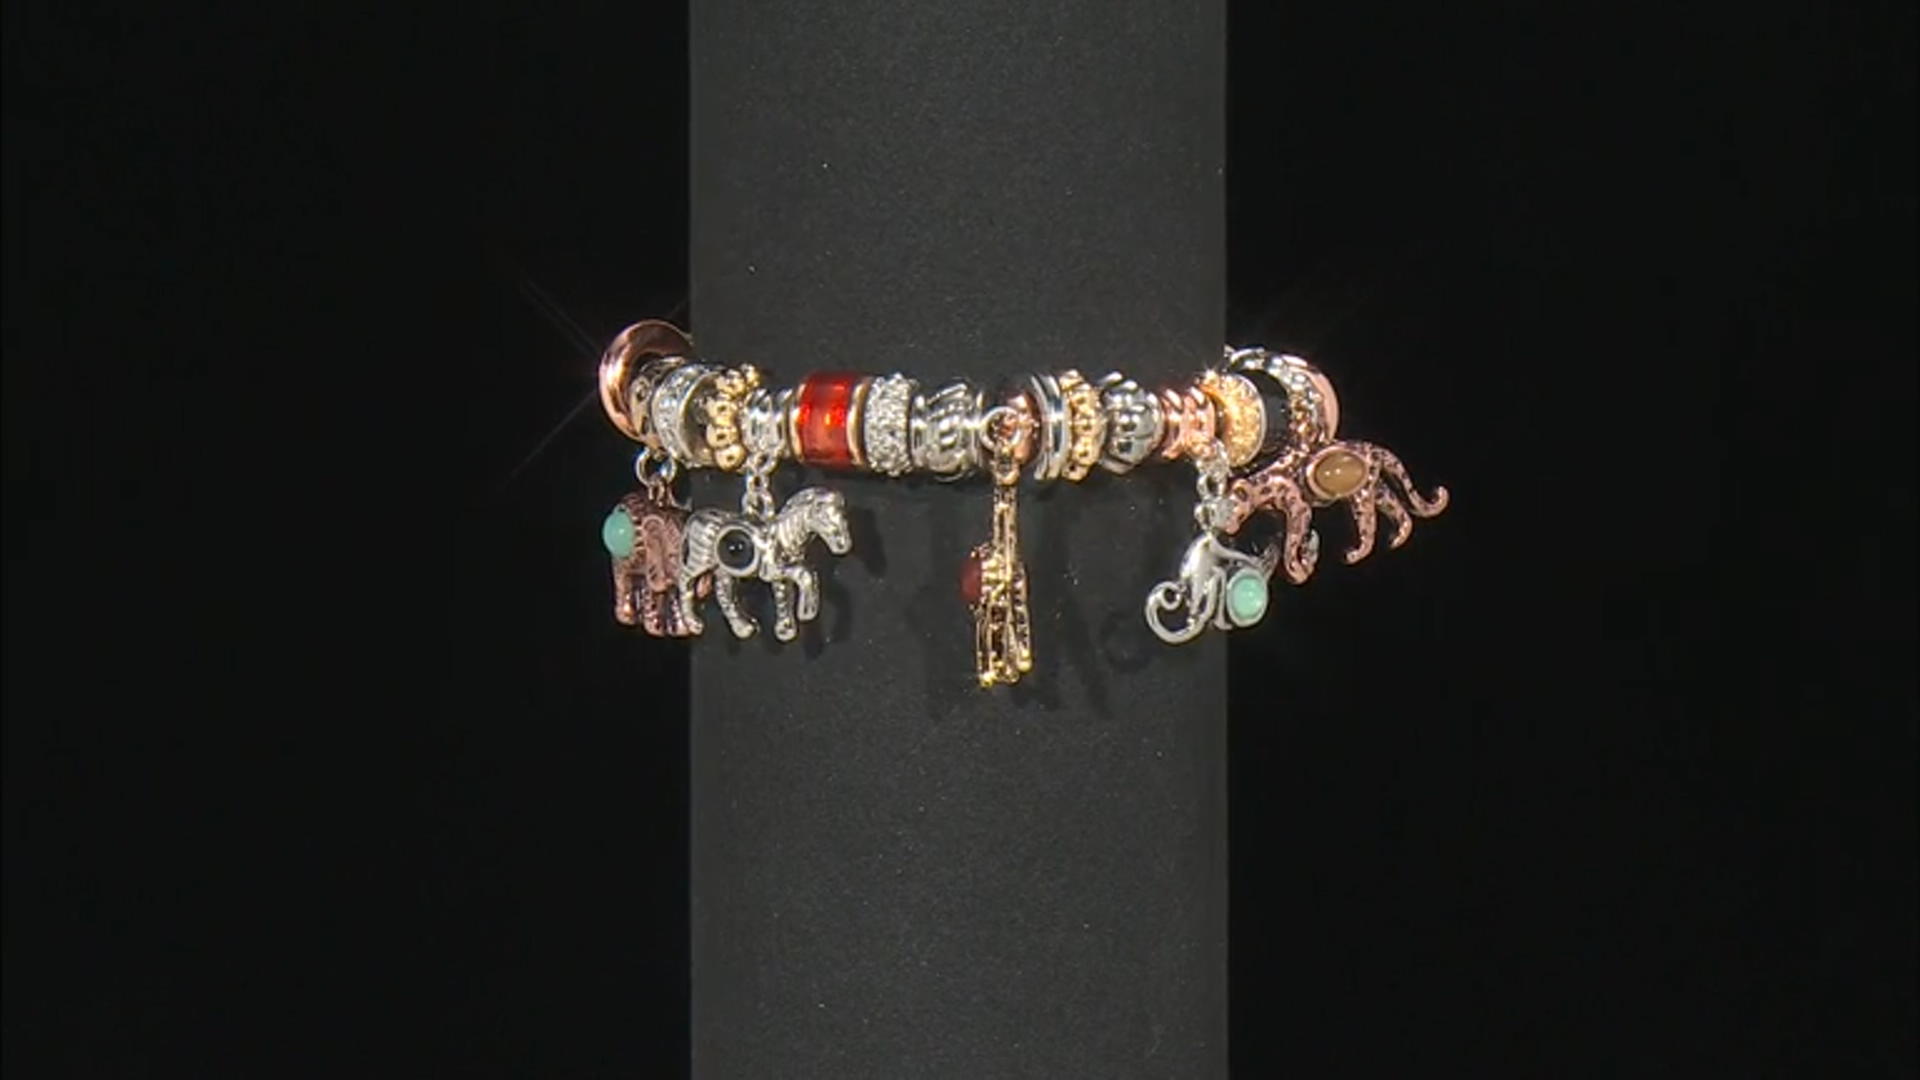 Multi Color Tri-Tone Animal Themed Charm Bracelet Video Thumbnail